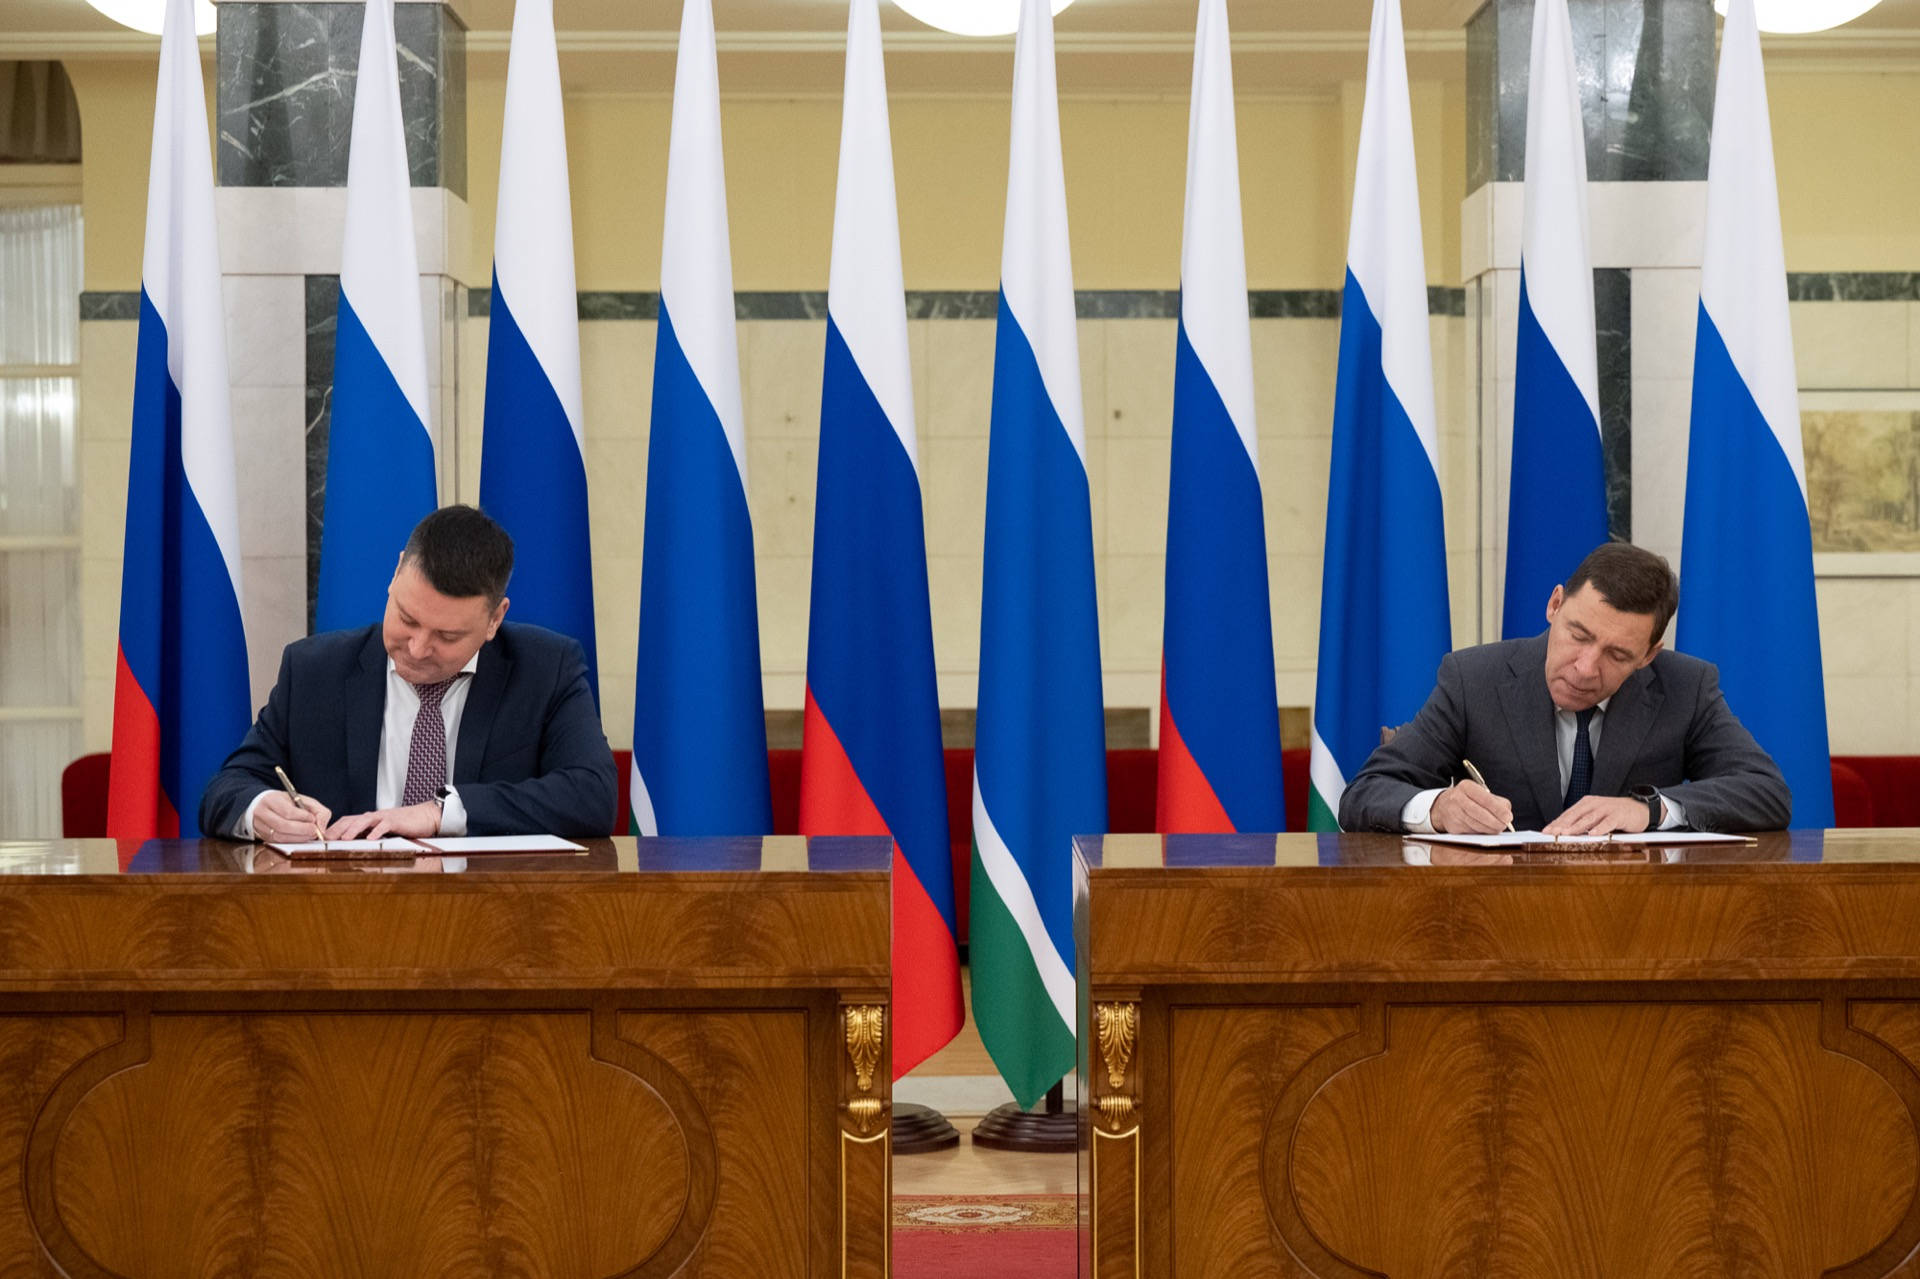 Евгений Куйвашев и Сергей Чирков заключили соглашение о сотрудничестве